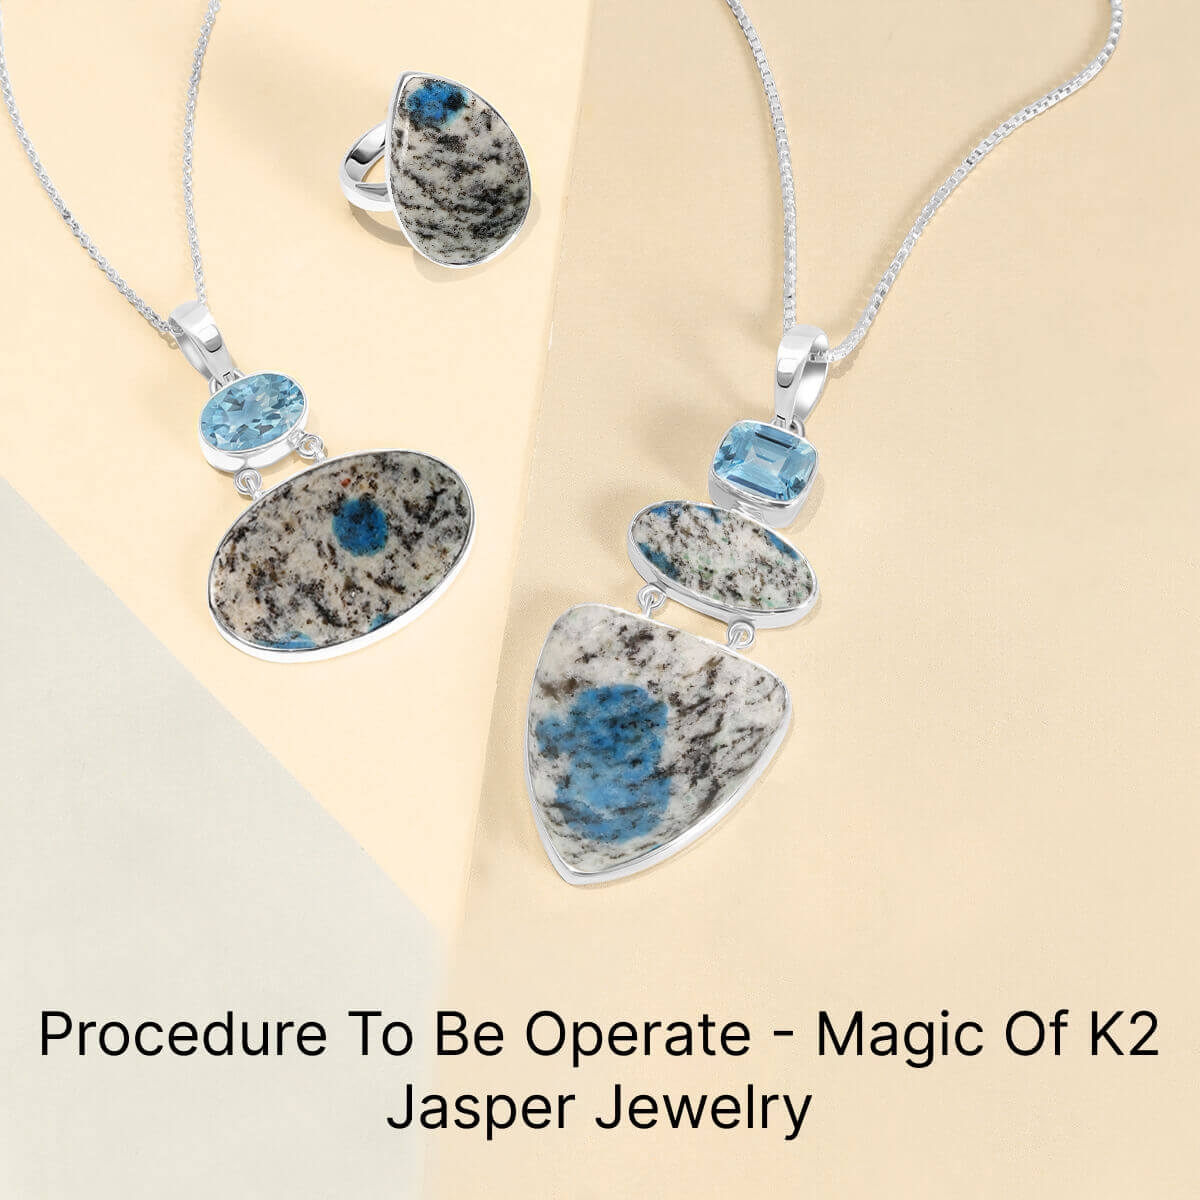 How to Use K2 Jasper Jewelry